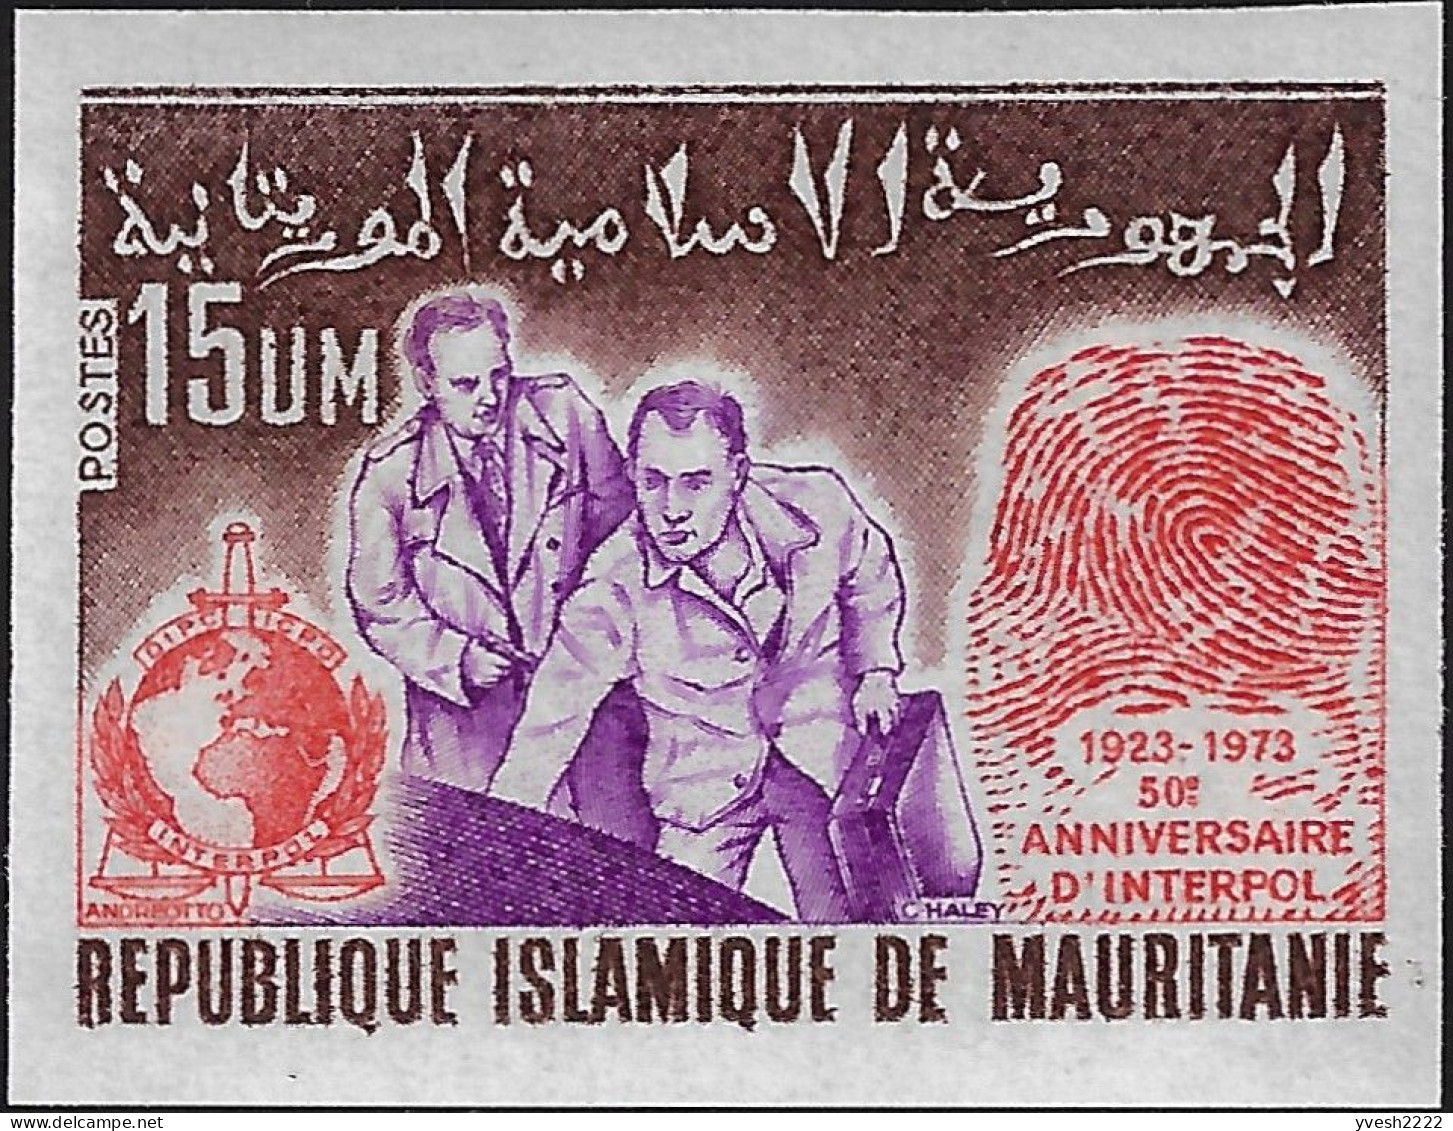 Mauritanie 1973  Y&T 310 Non Dentelé. 50 Ans D'Interpol. Empreinte Digitale, Interpol - Police - Gendarmerie